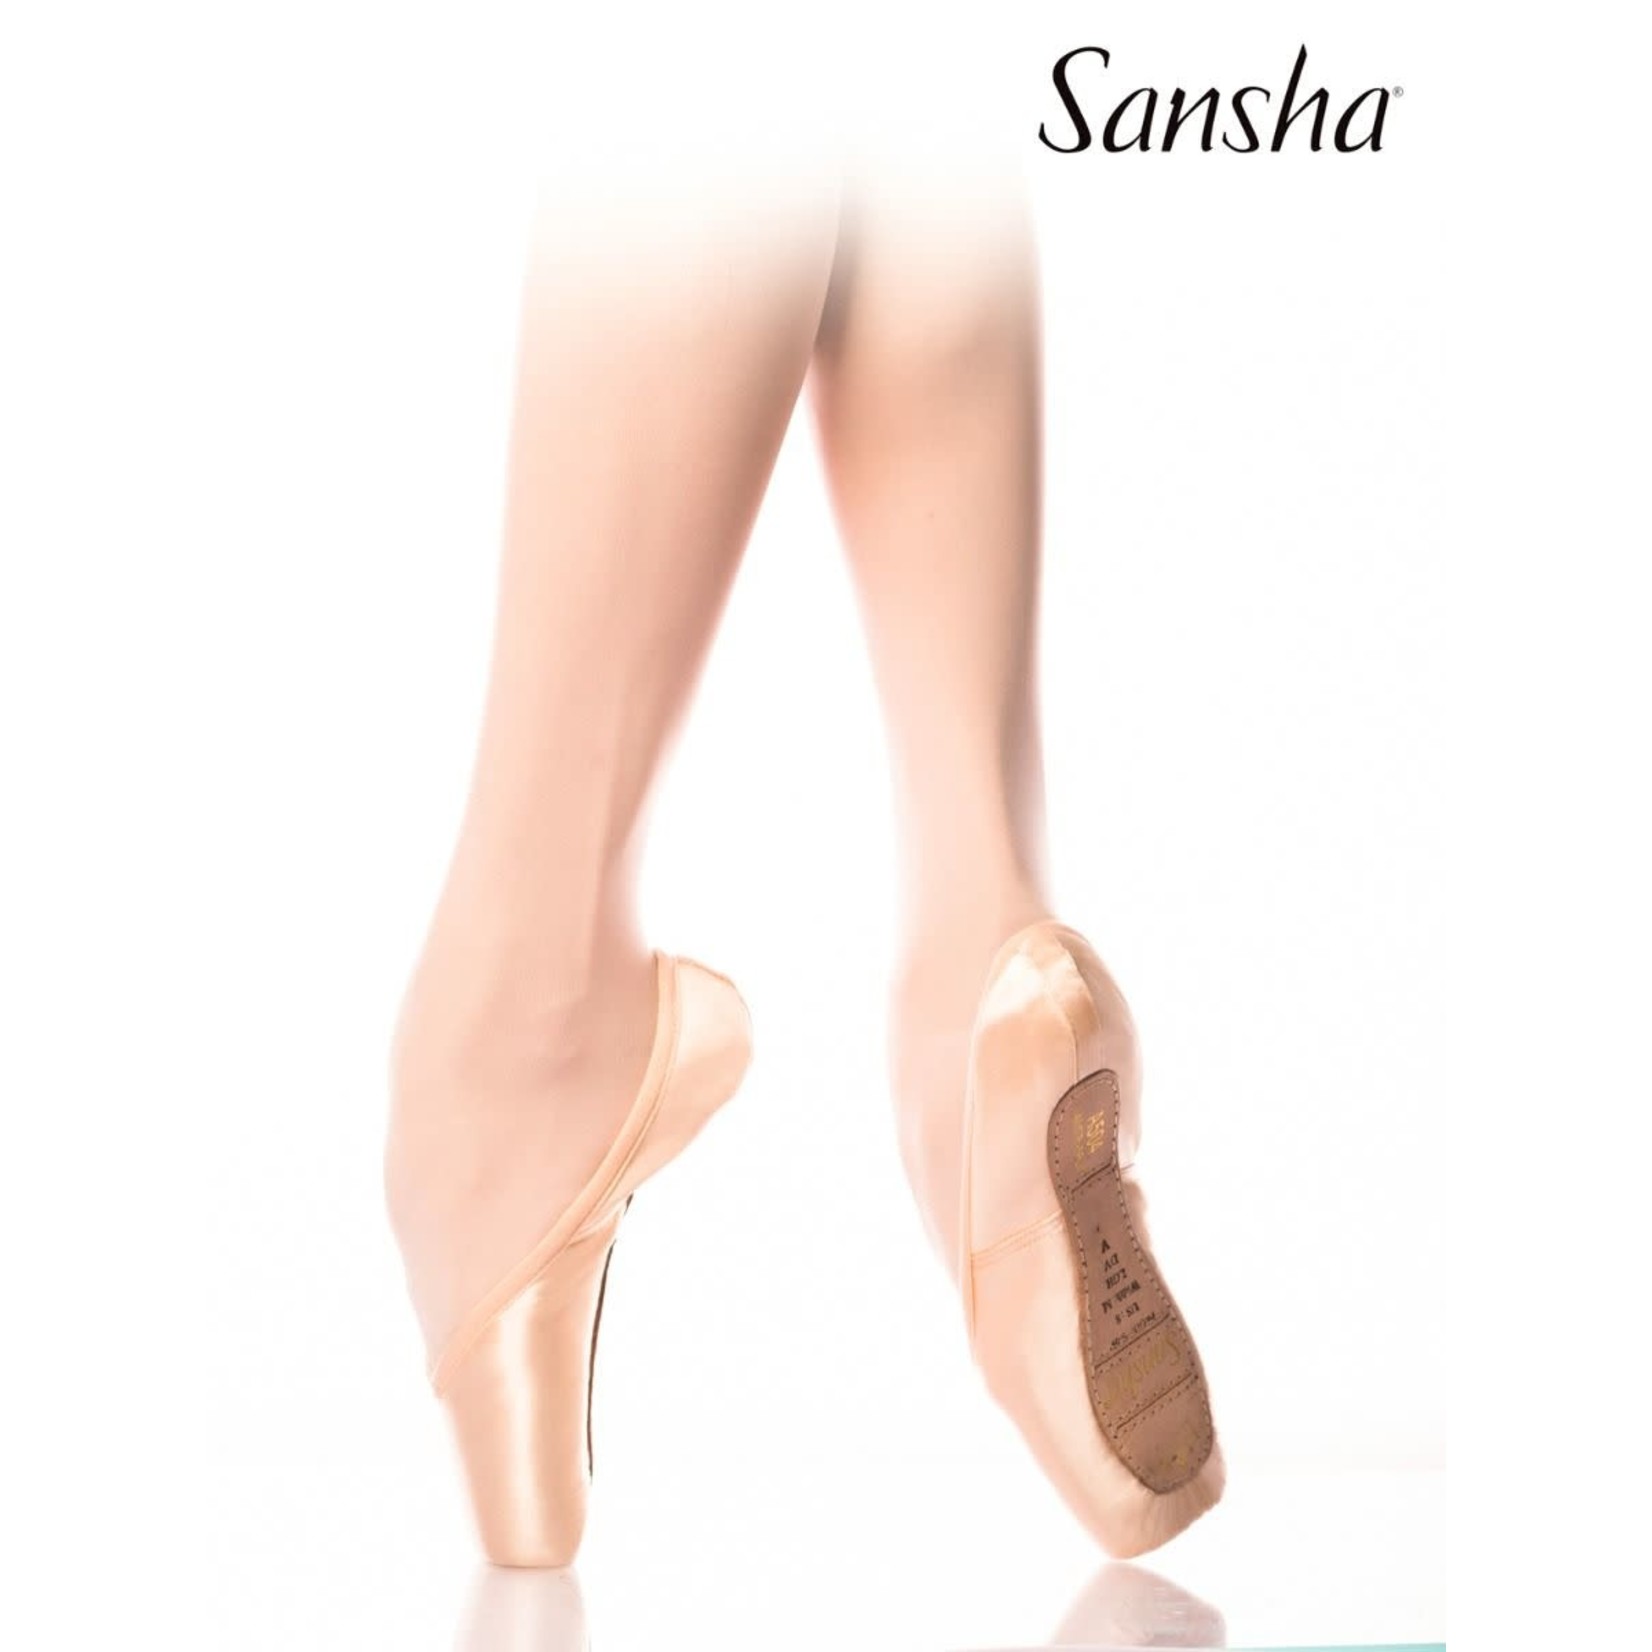 Sansha 101: Sansha Soprano    5M  DISCONTINUED